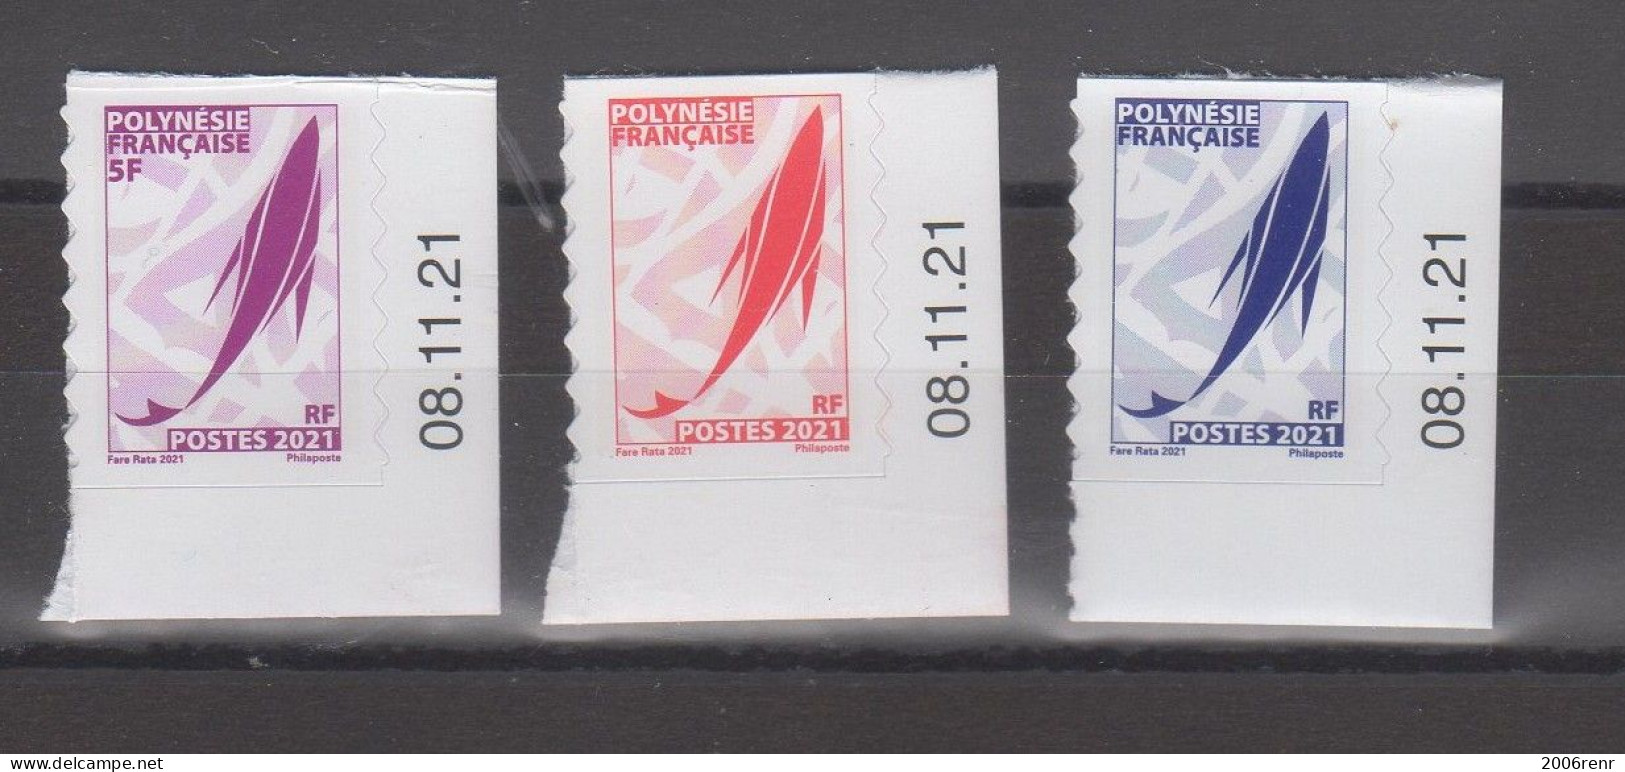 Polynésie Française Timbres De Carnet Autocollants à Usage Local "Marara" Bord De Carnet Coin Daté. - Booklets